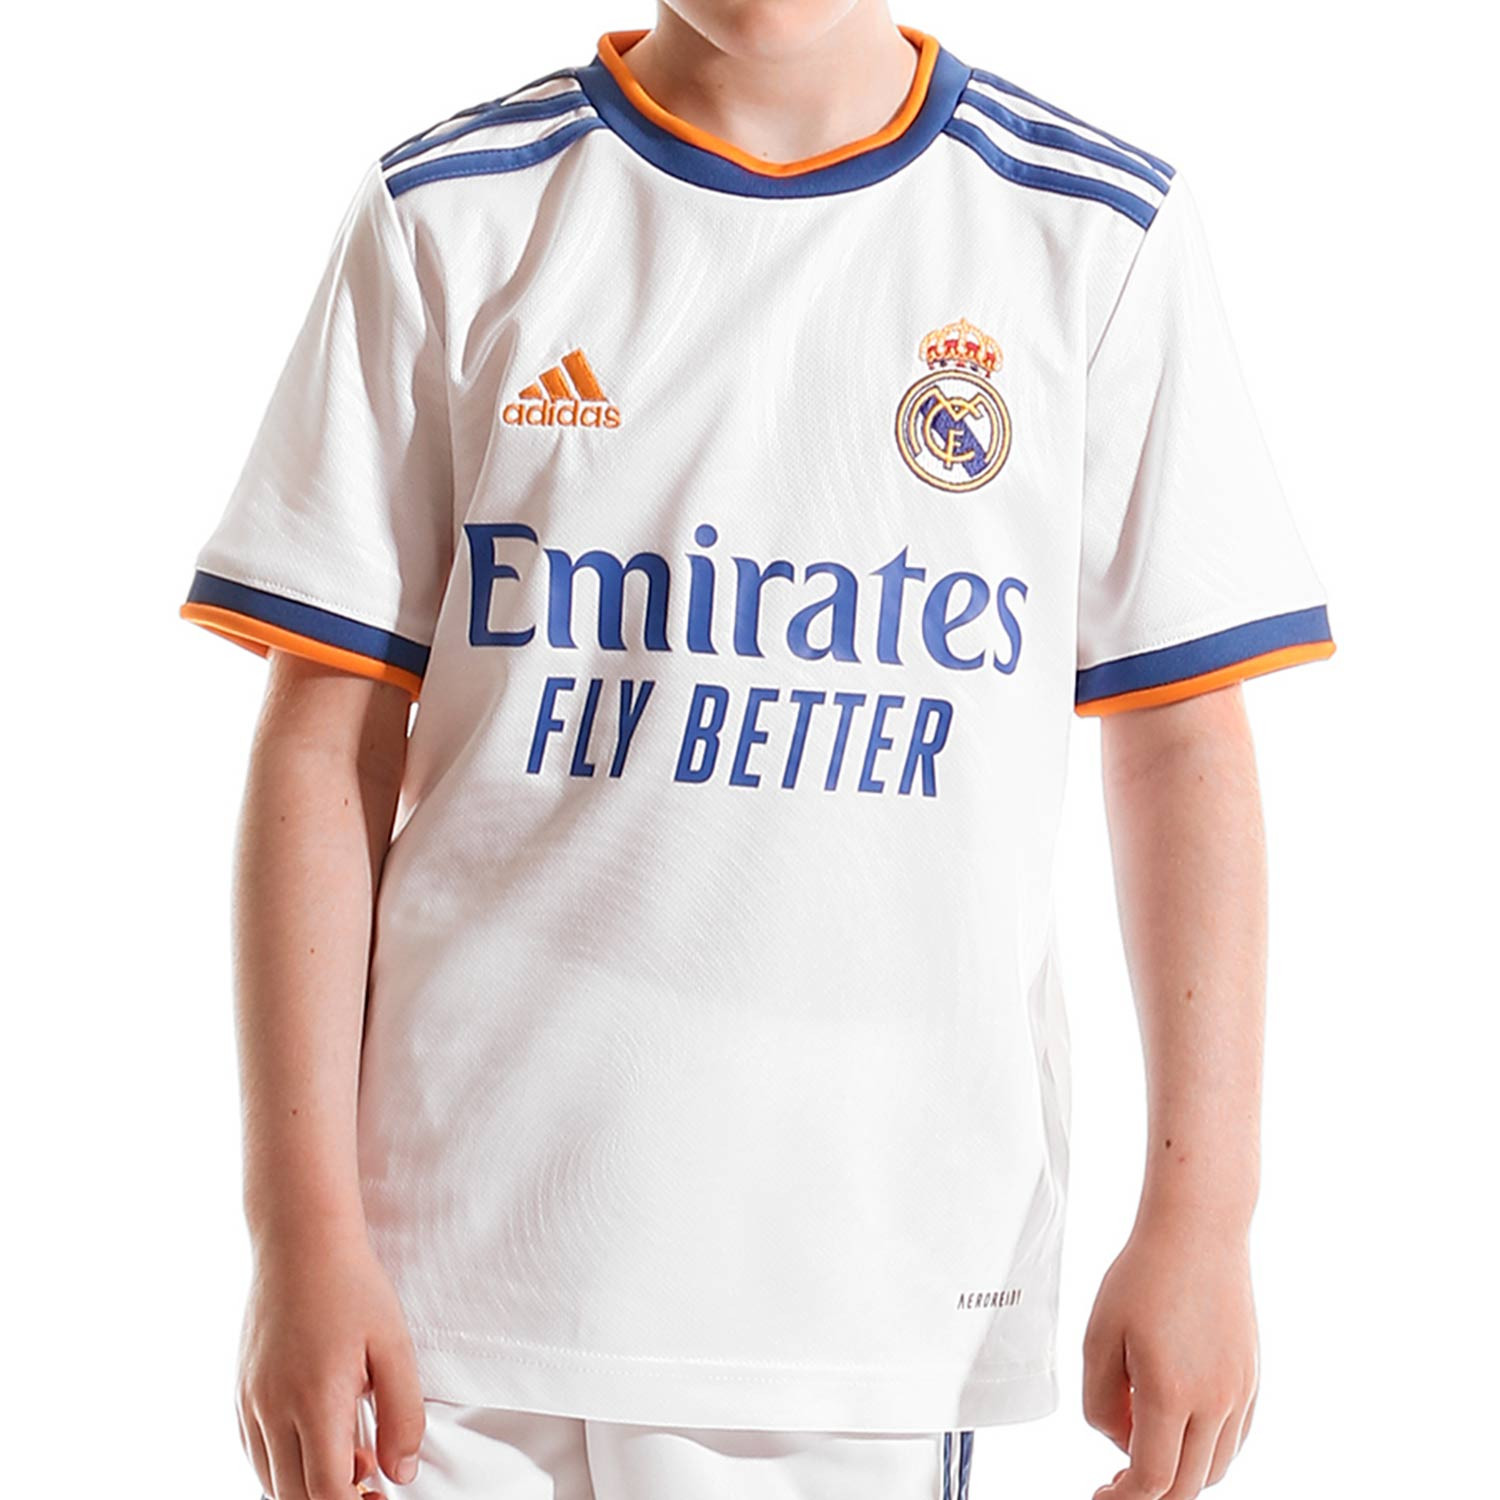 Camiseta adidas Real Madrid 2021 2022 niño blanca